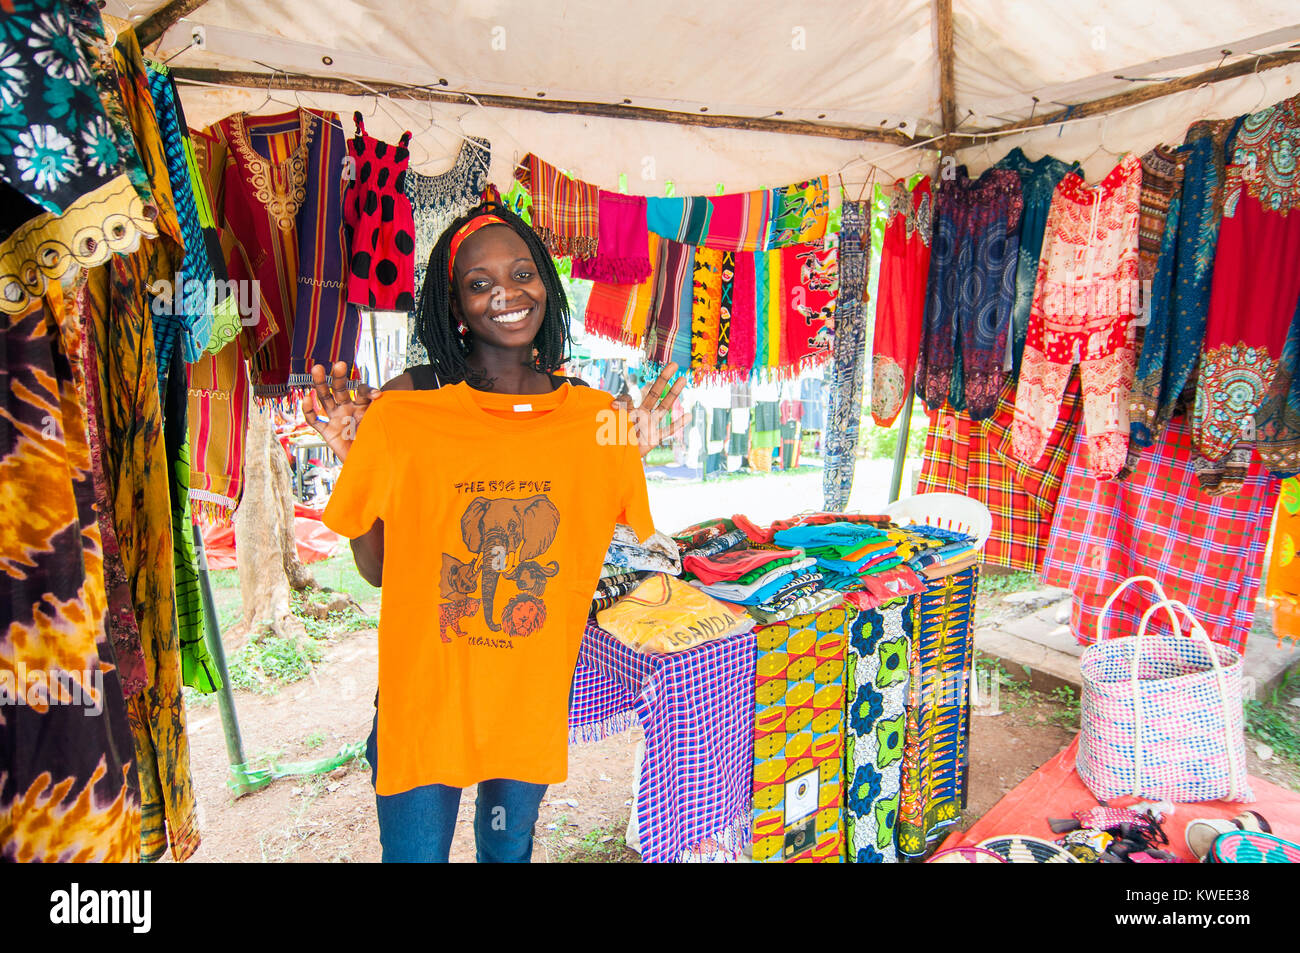 L'intérieur de décrochage, vêtements africains et marché artisanal avec cale de toile, Kampala Road, Kampala, Ouganda Banque D'Images